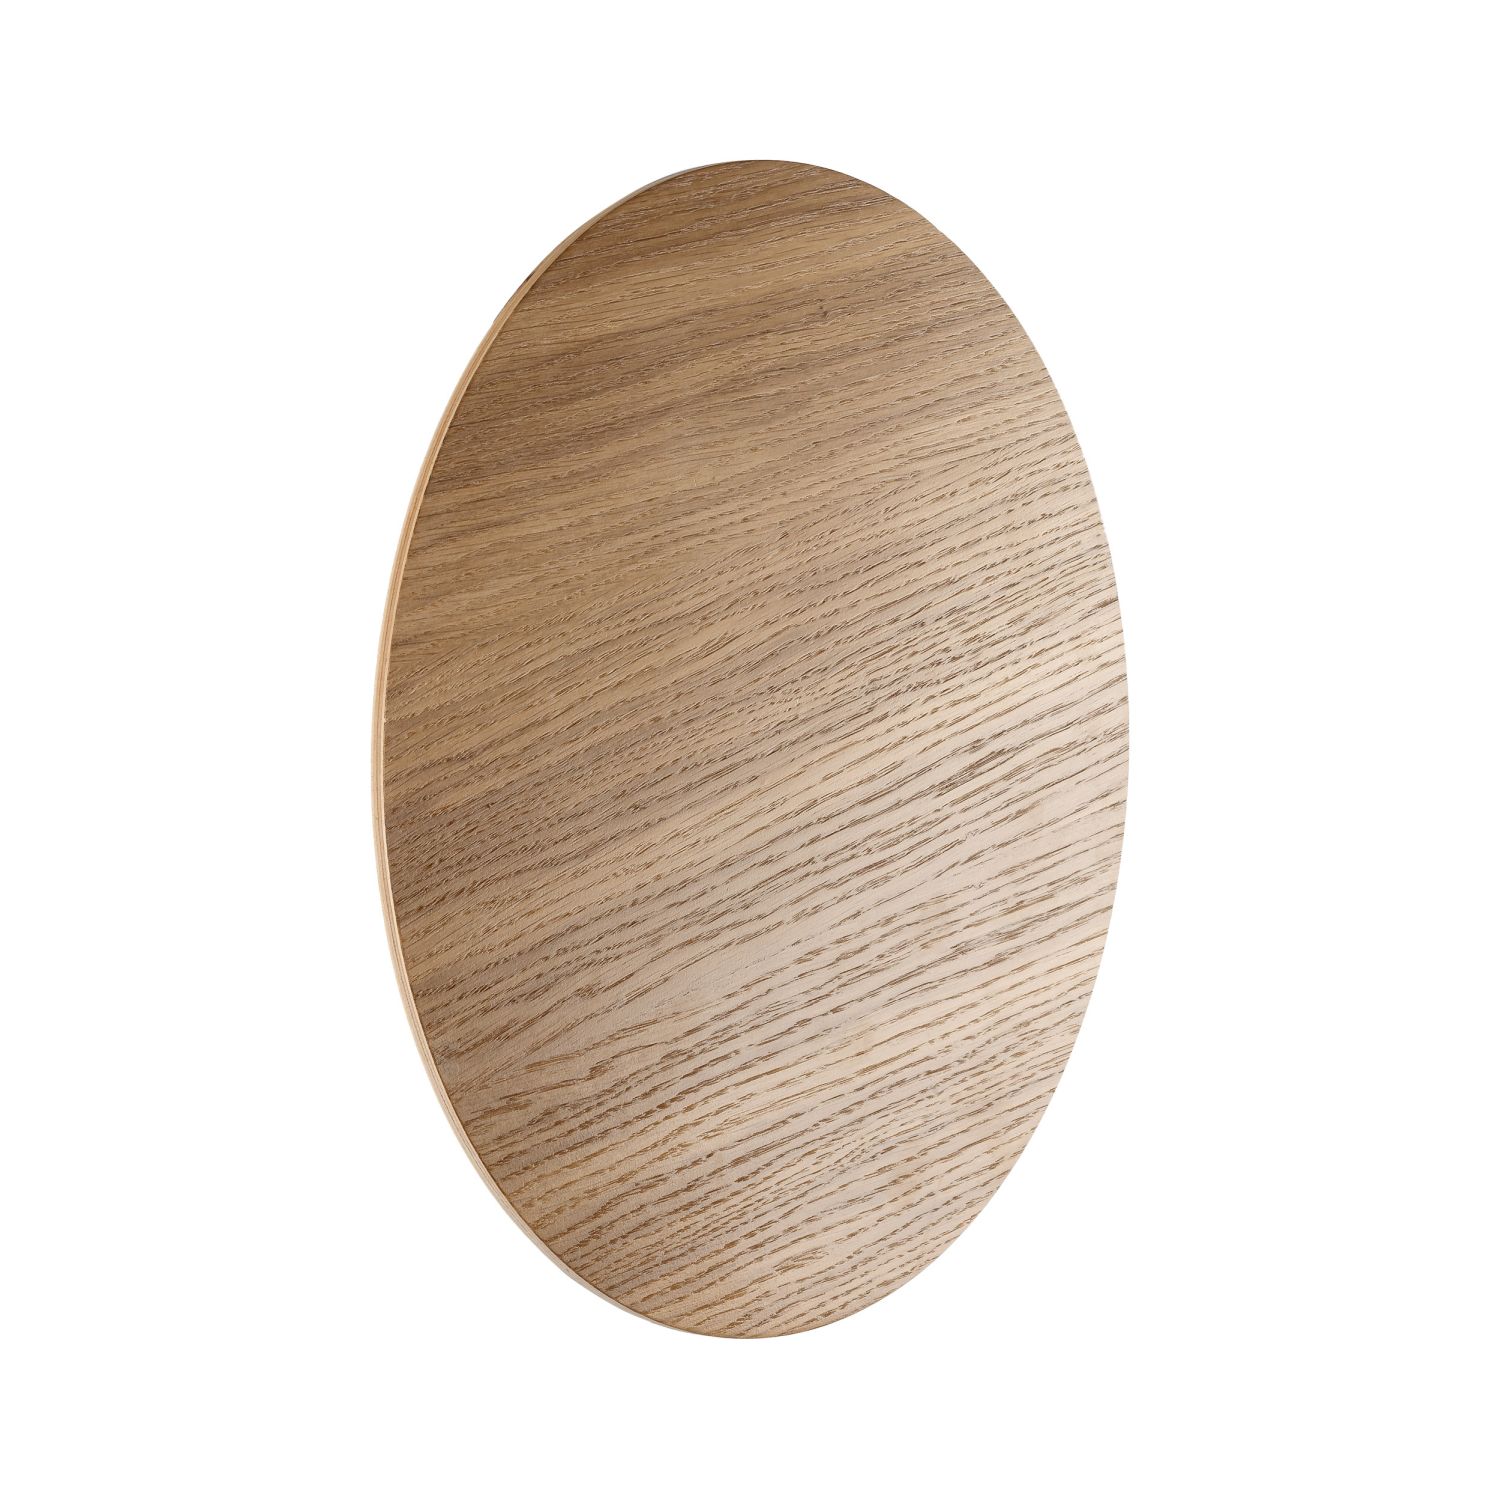 Wandleuchte Holz rund Ø 40 cm für 4x G9 indirektes Licht